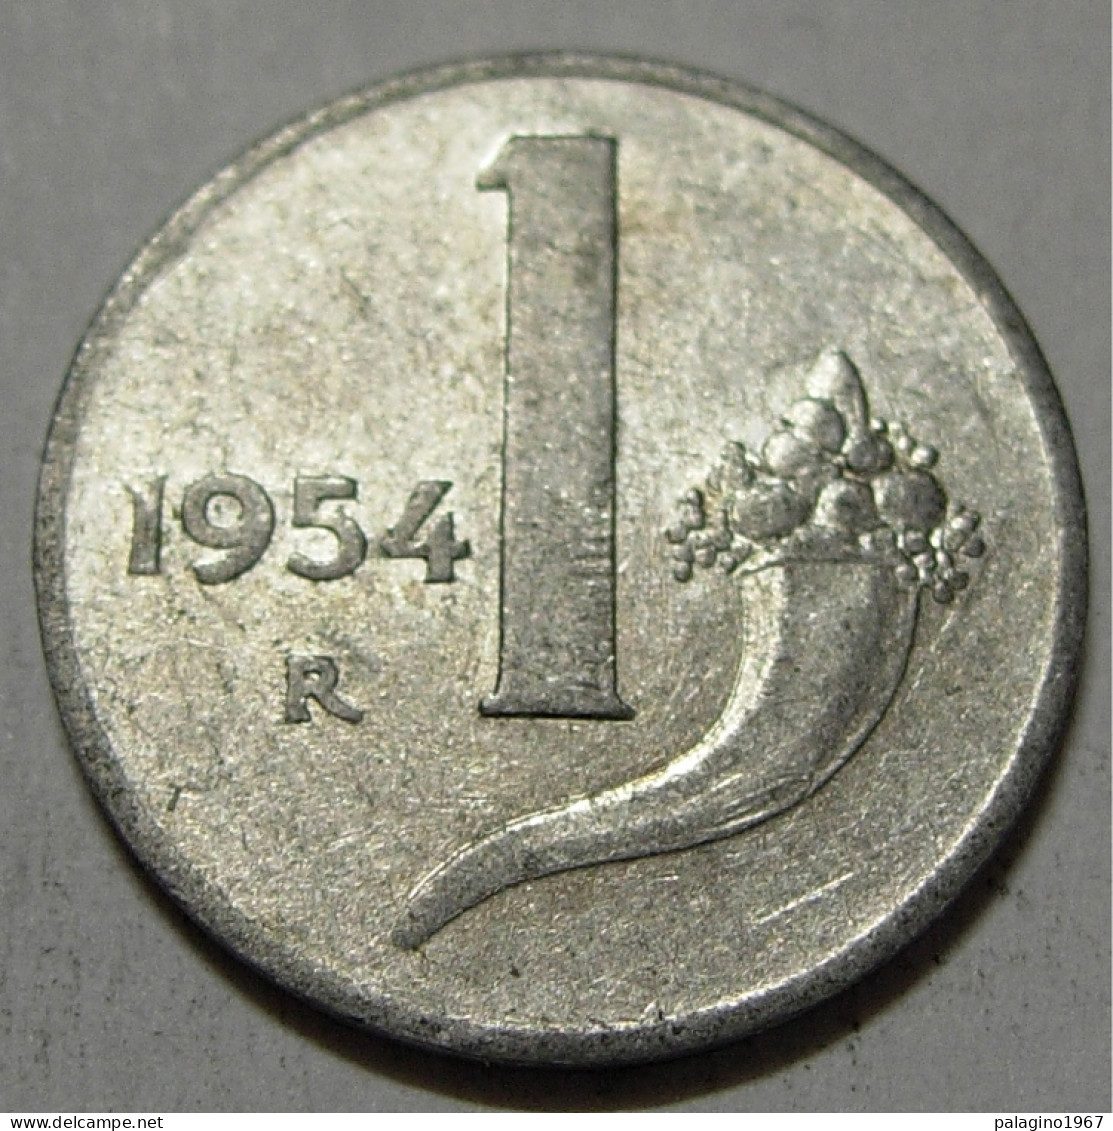 REPUBBLICA ITALIANA 1 Lira Cornucopia 1954 QBB  - 1 Lira